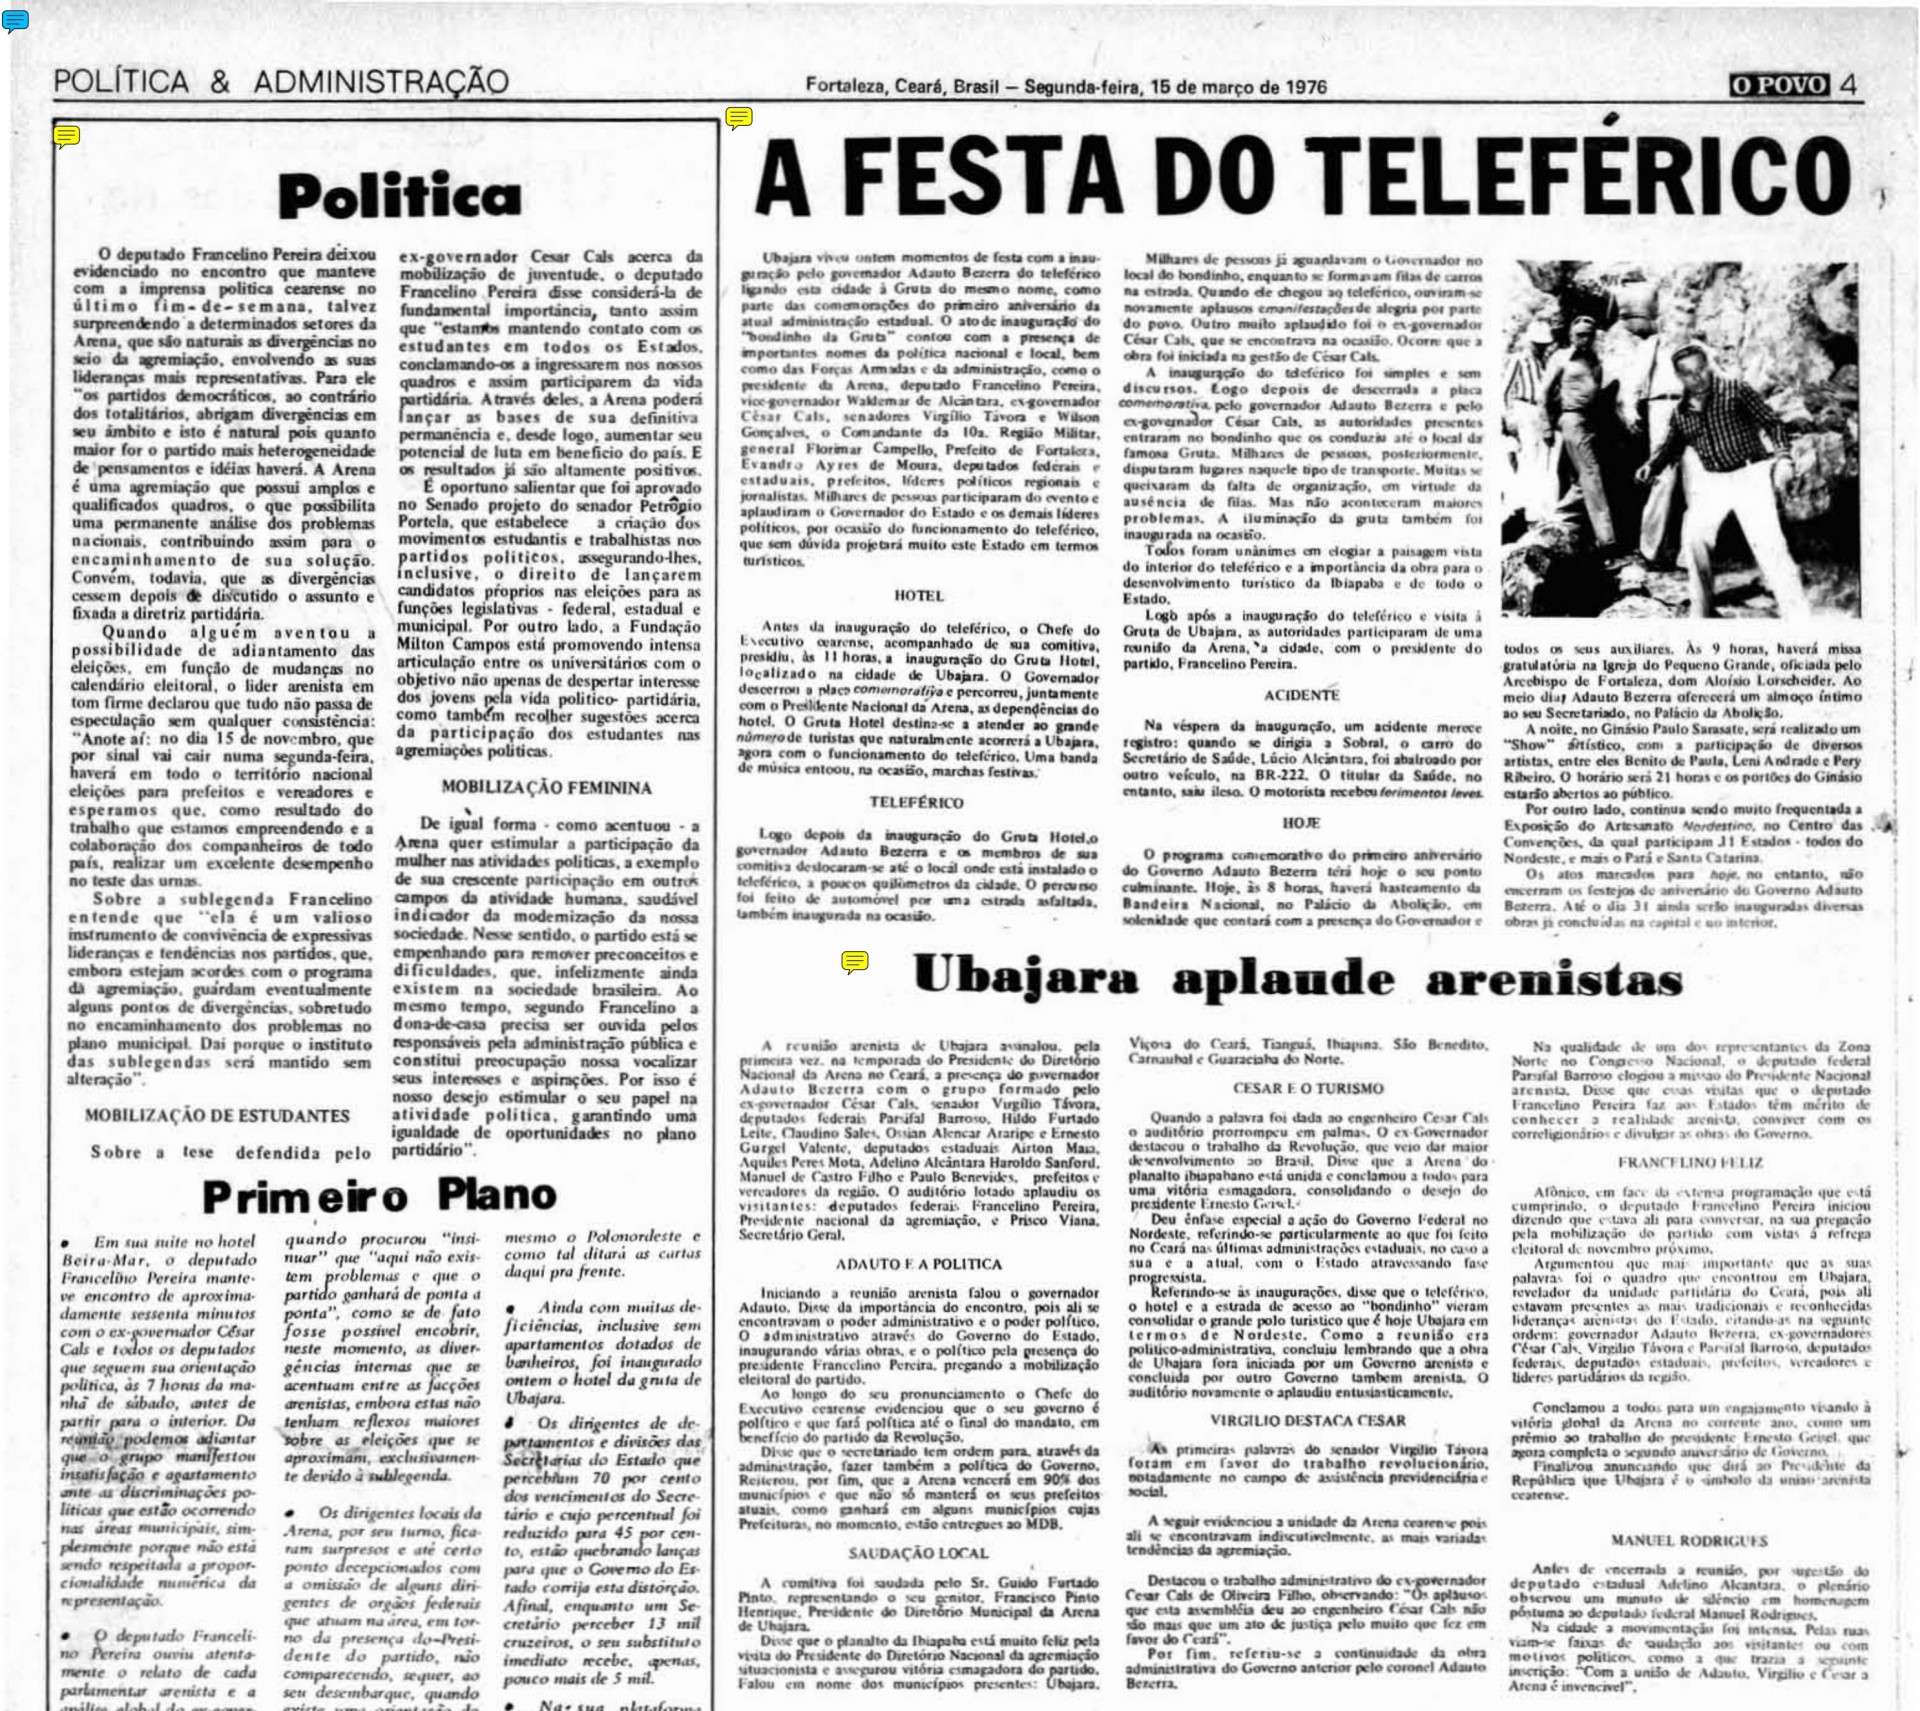 Edição do O POVO veiculada no dia 15 de março de 1975 cuja manchete é sobre a inauguração do Bondinho de Ubajara, realizada no dia anterior 